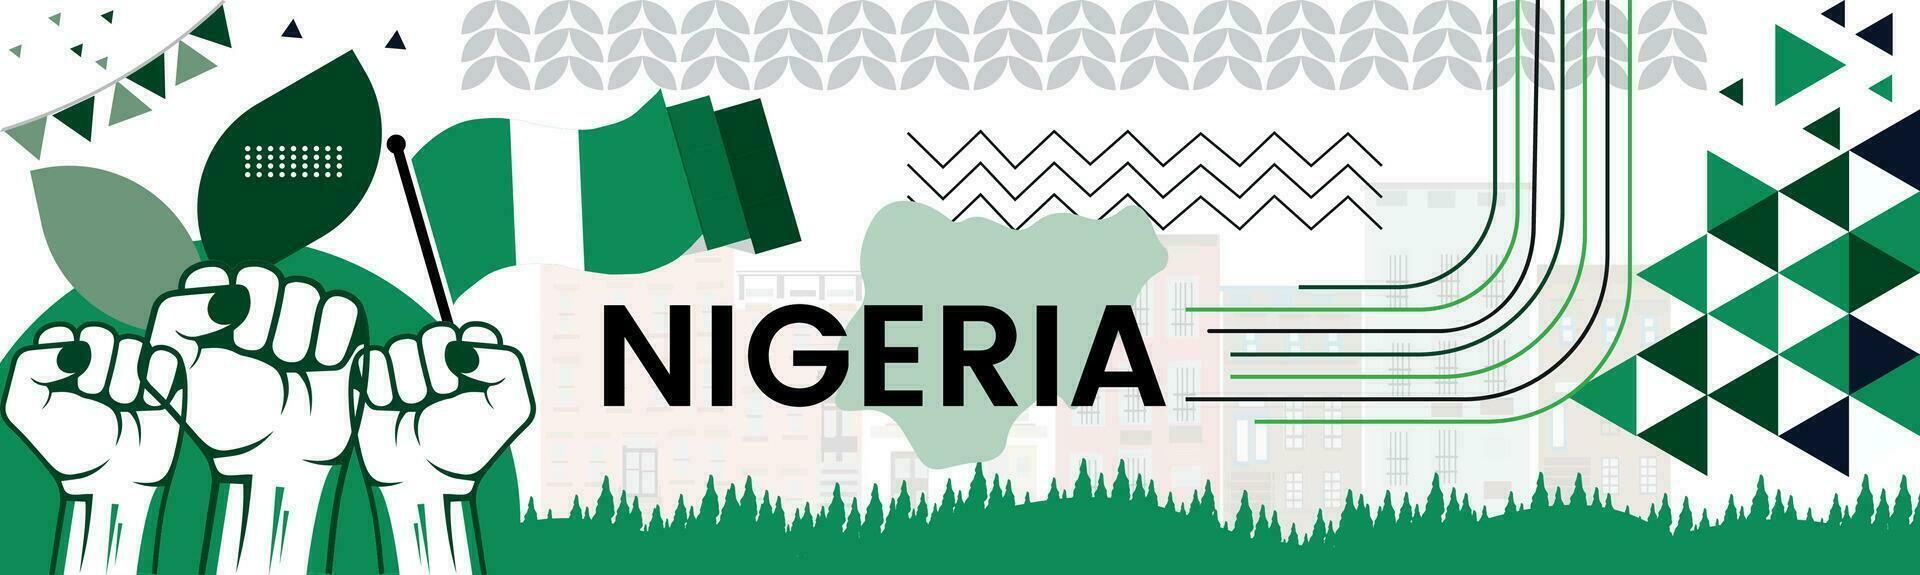 Nigeria carta geografica e sollevato pugni. nazionale giorno o indipendenza giorno design per Nigeria celebrazione. moderno retrò design con astratto icone. vettore illustrazione.